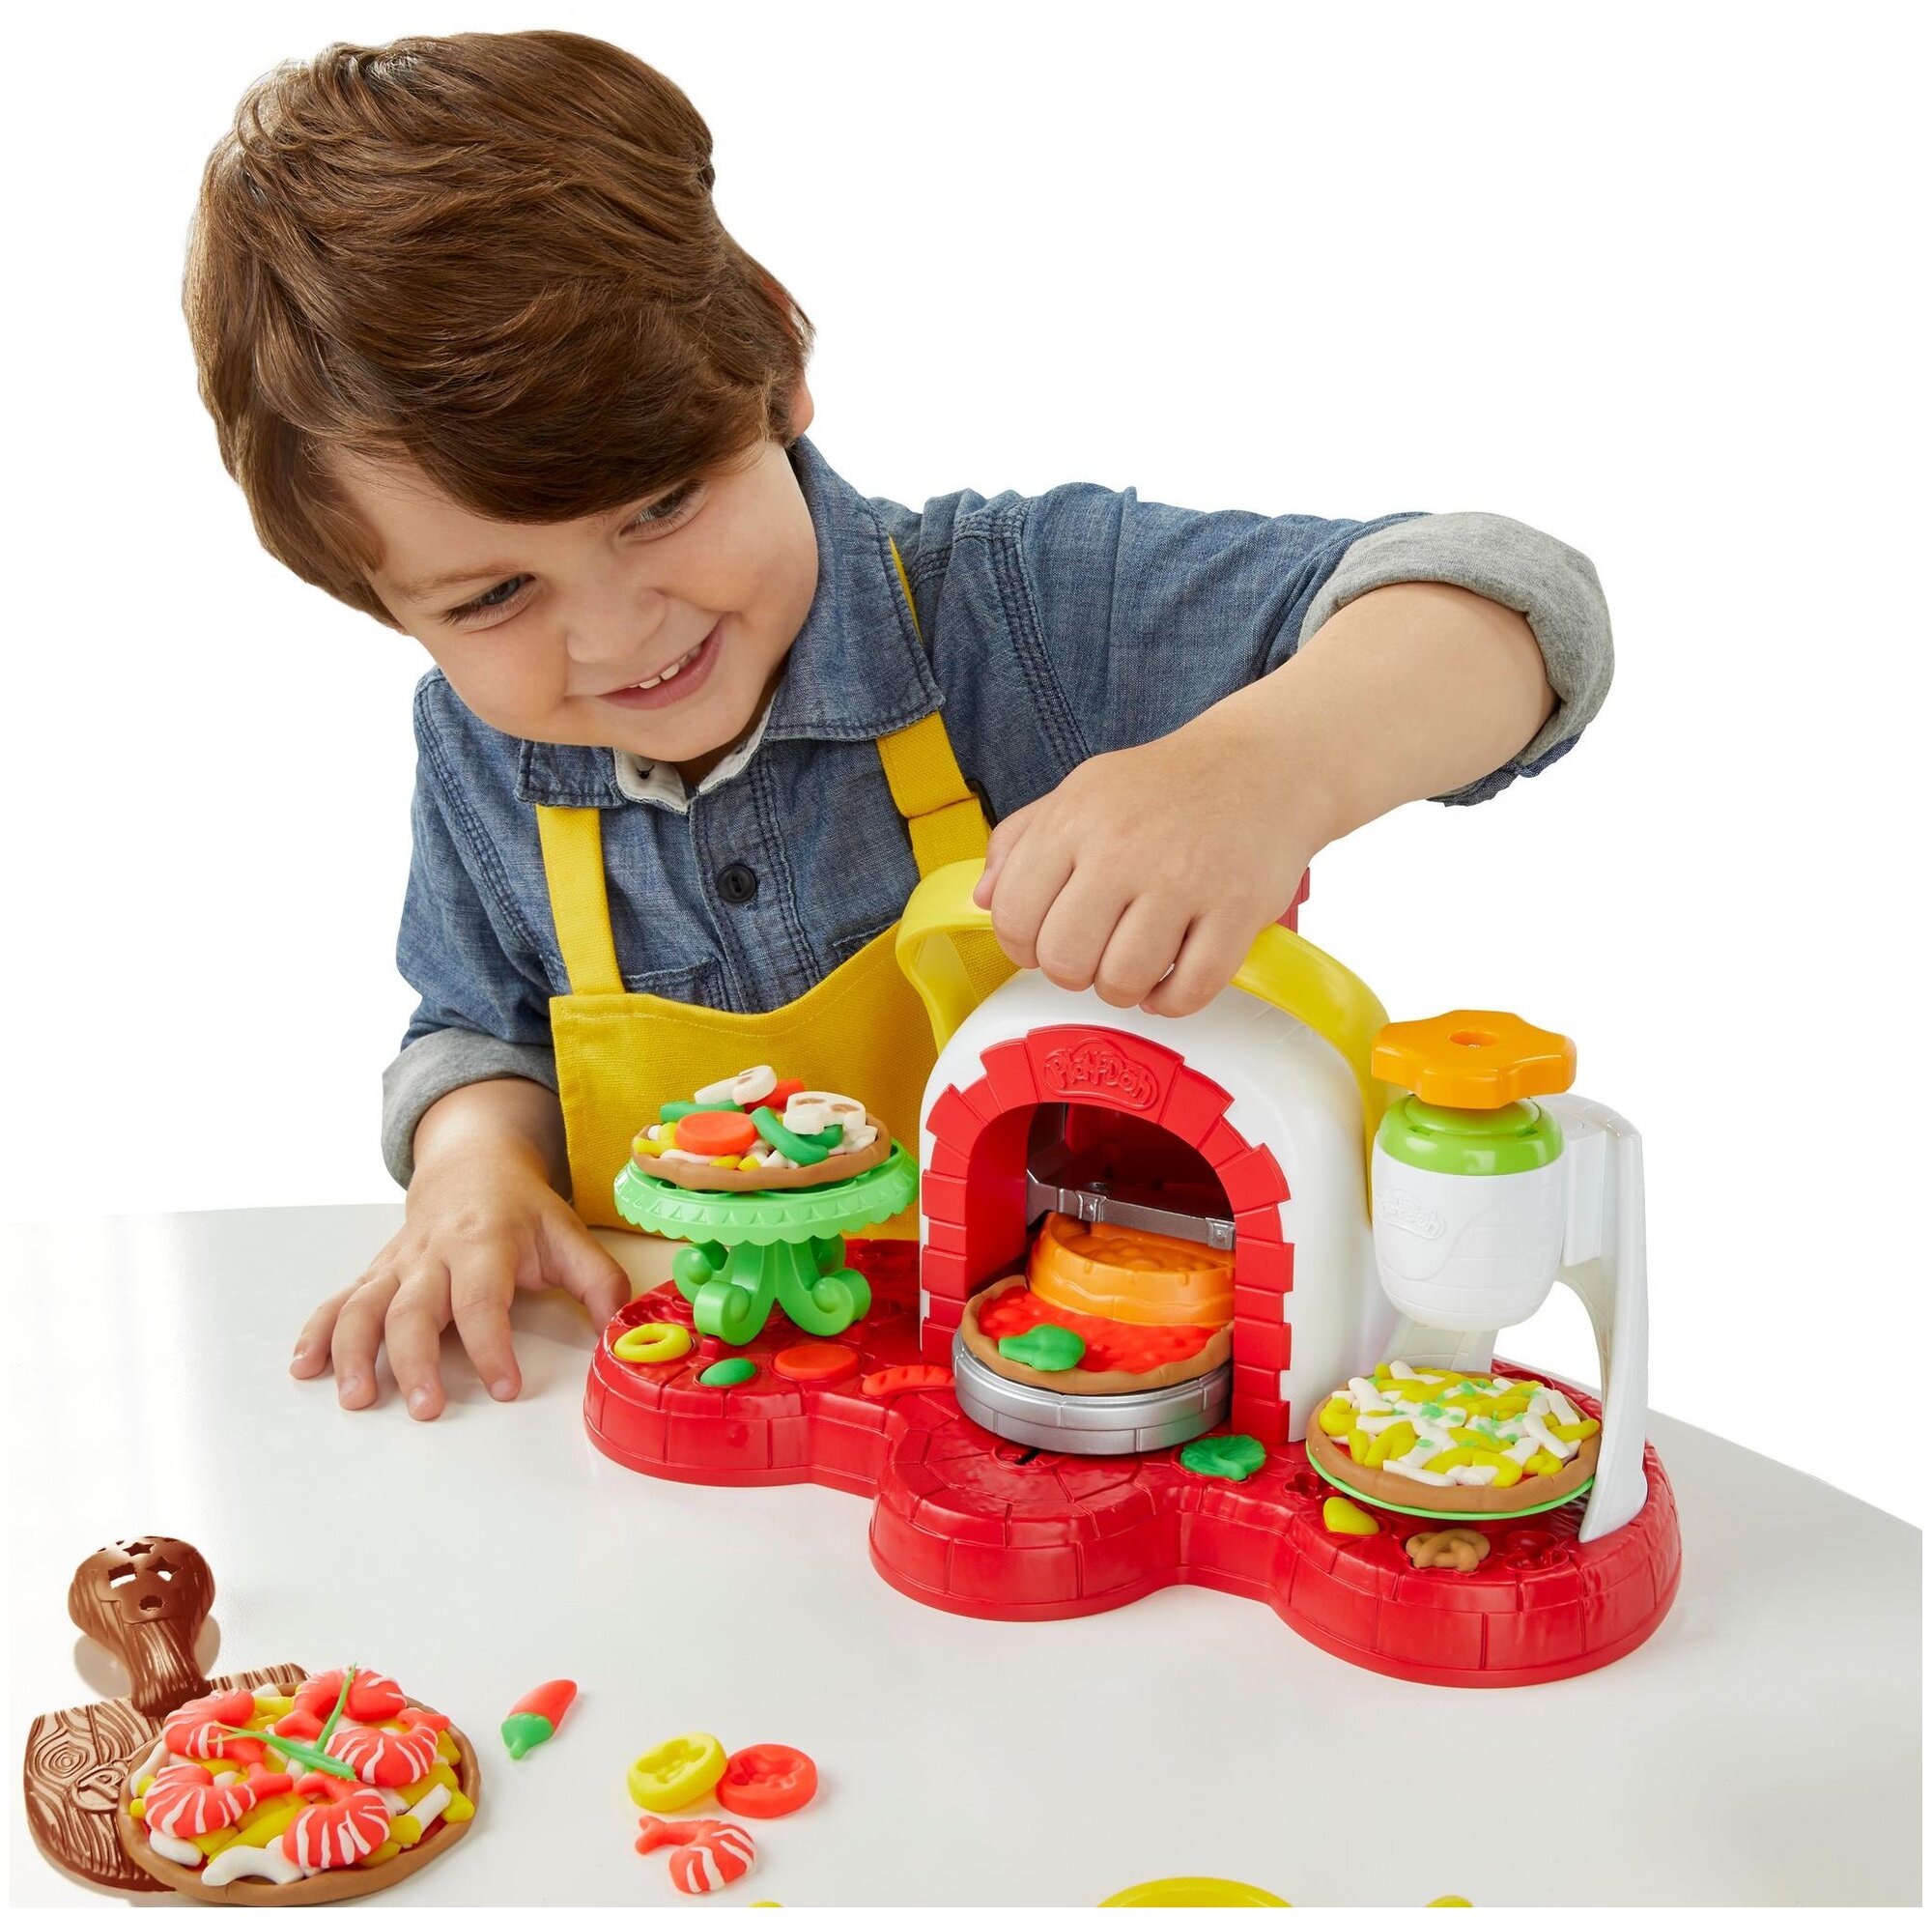 Игровые наборы и фигурки для детей Hasbro Play-Doh - фото №4